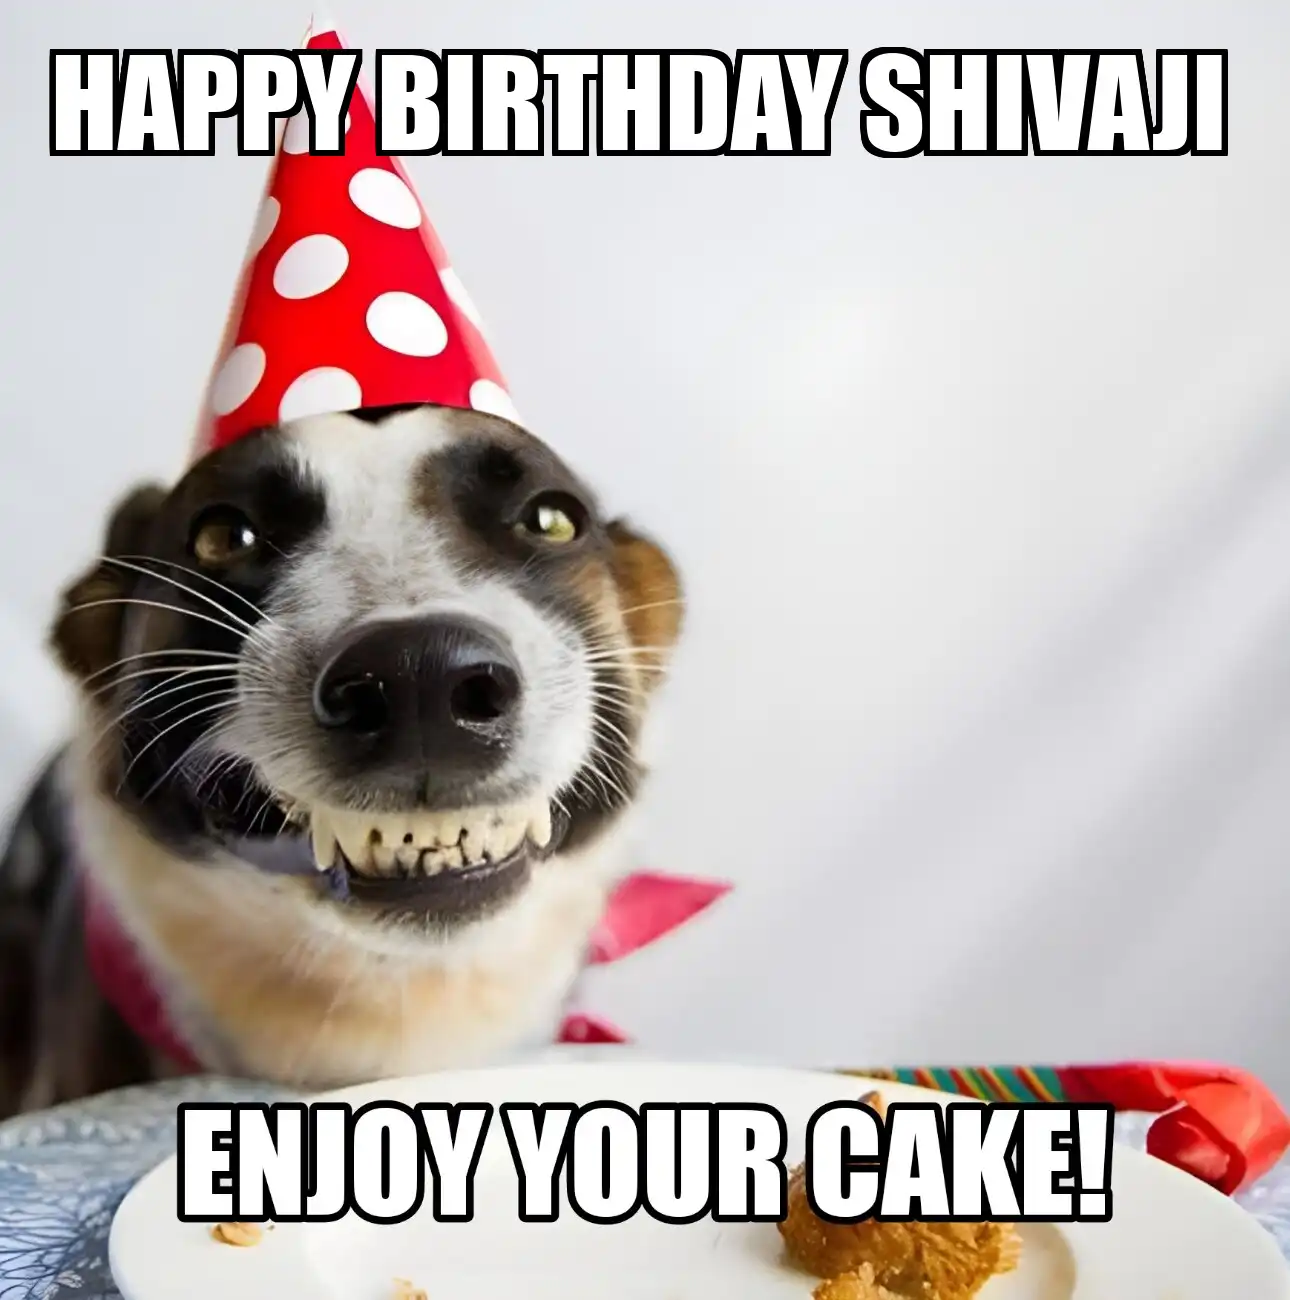 Happy Birthday Shivaji Enjoy Your Cake Dog Meme